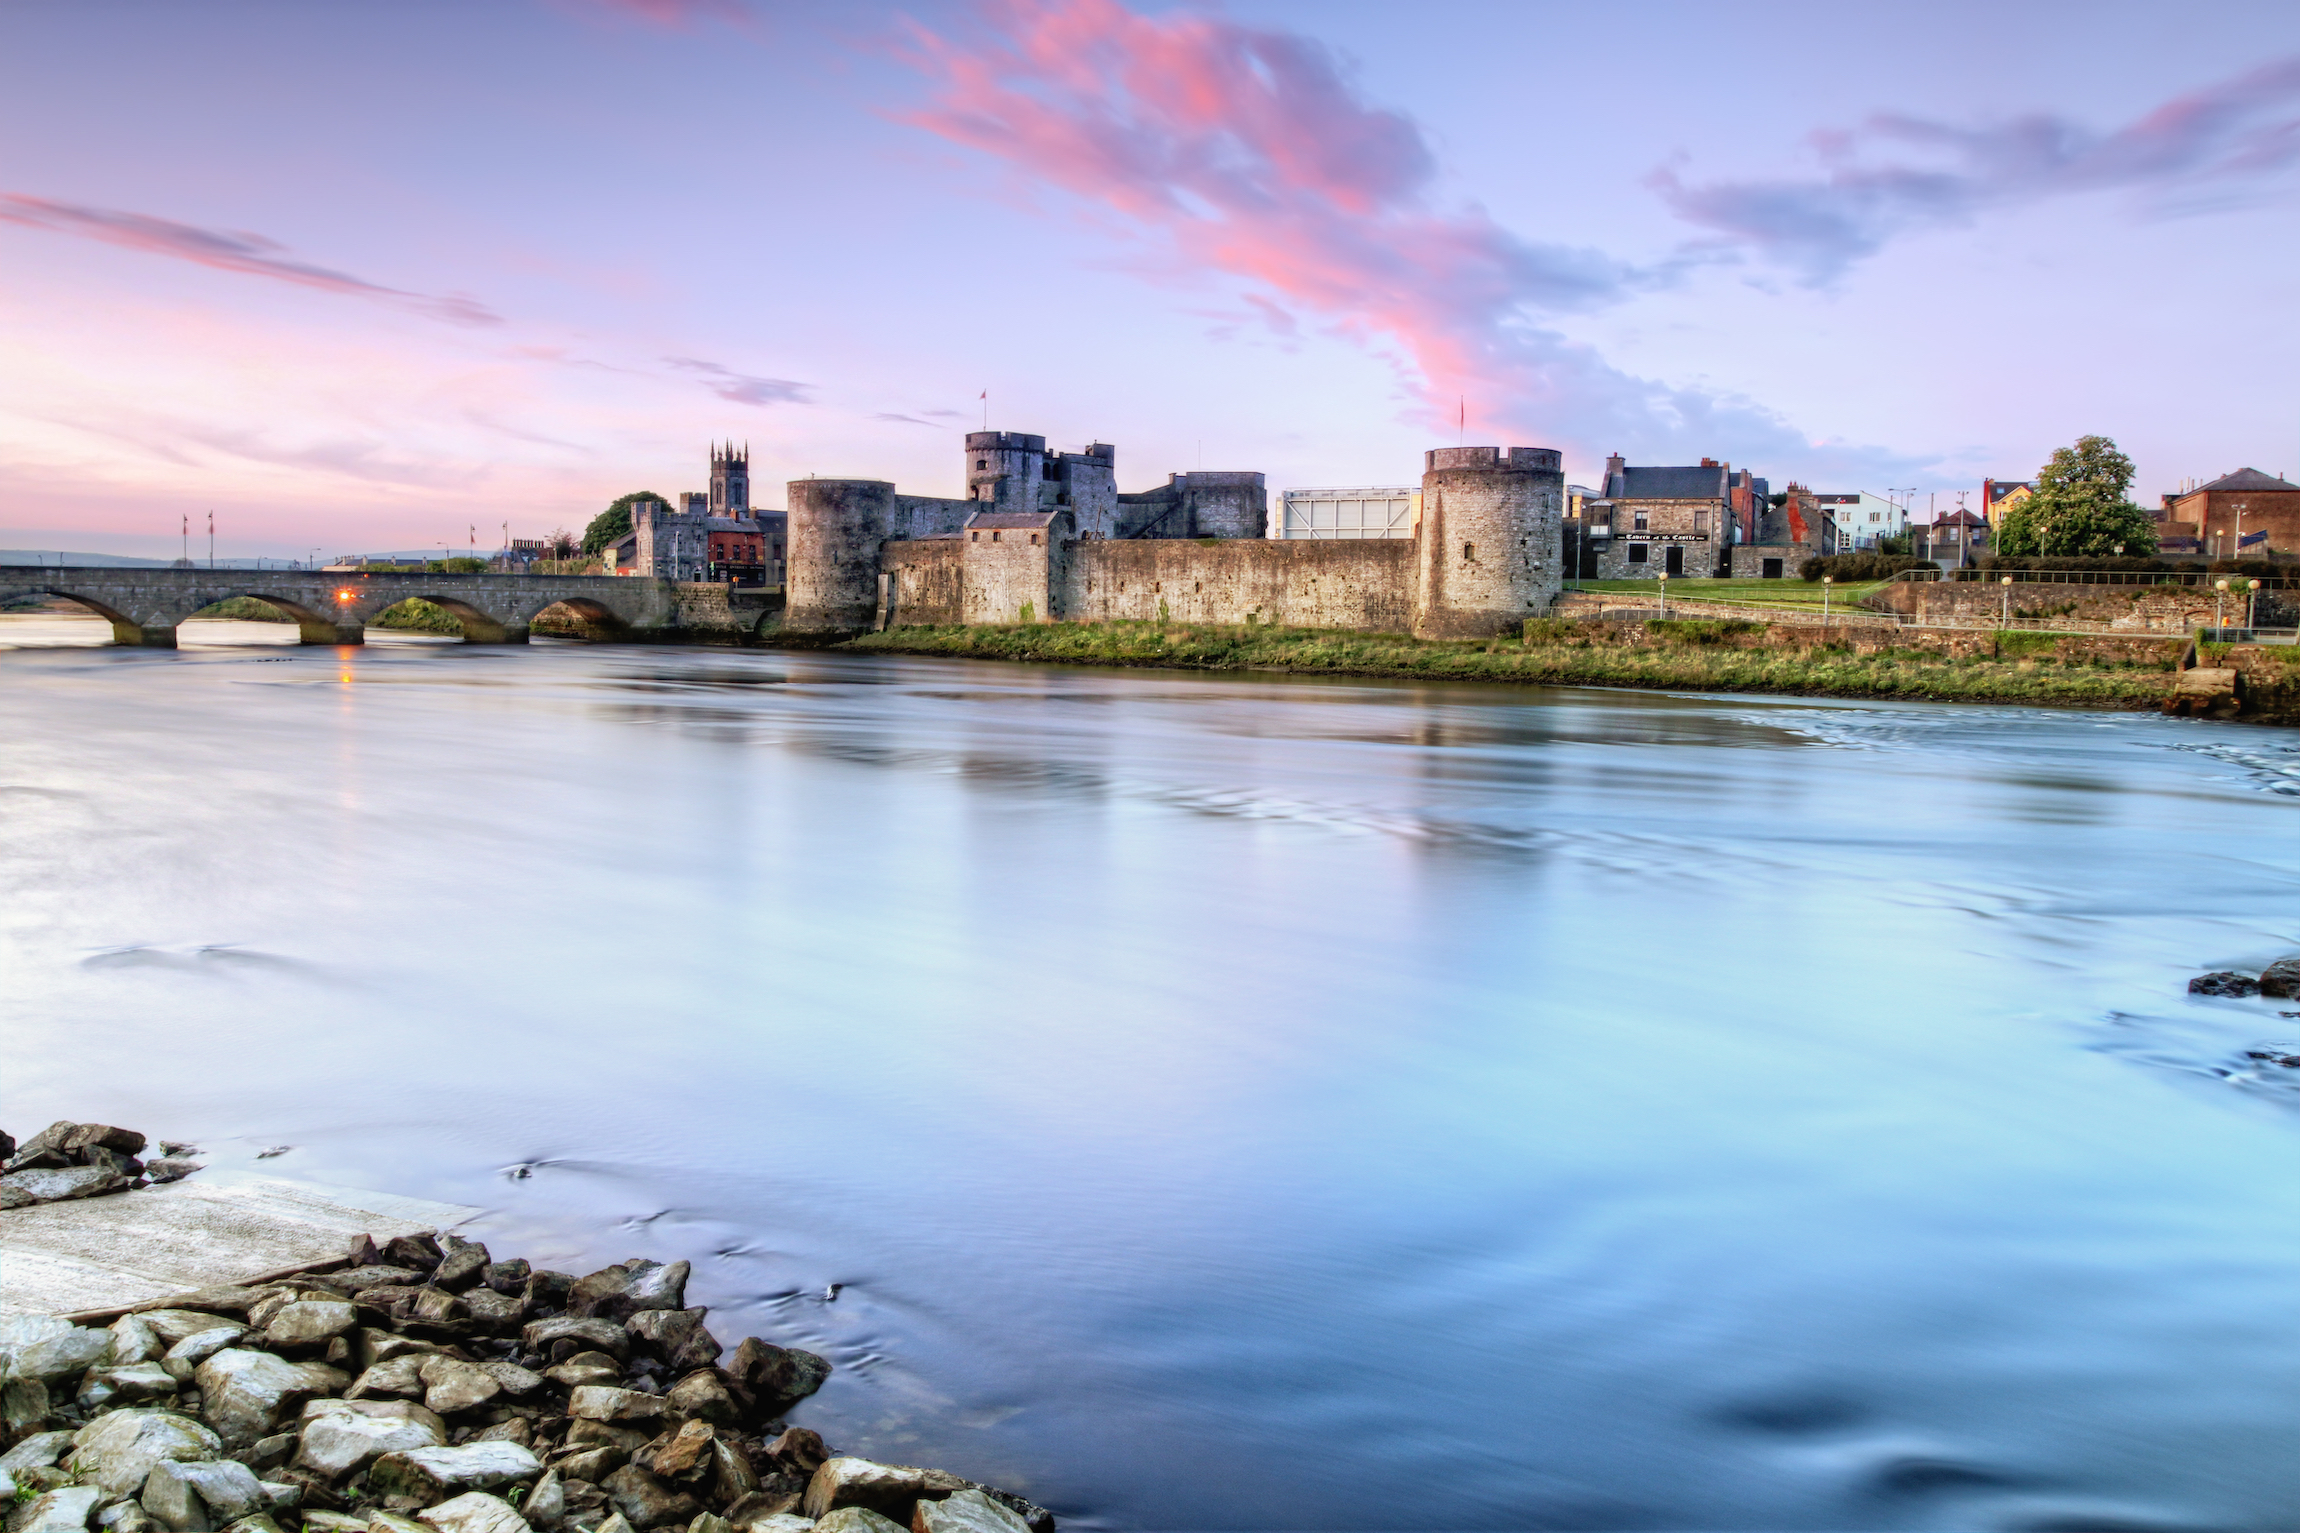 Zamek Króla Jana to zamek położony na Wyspie Króla w Limerick w Irlandii, obok rzeki Shannon.